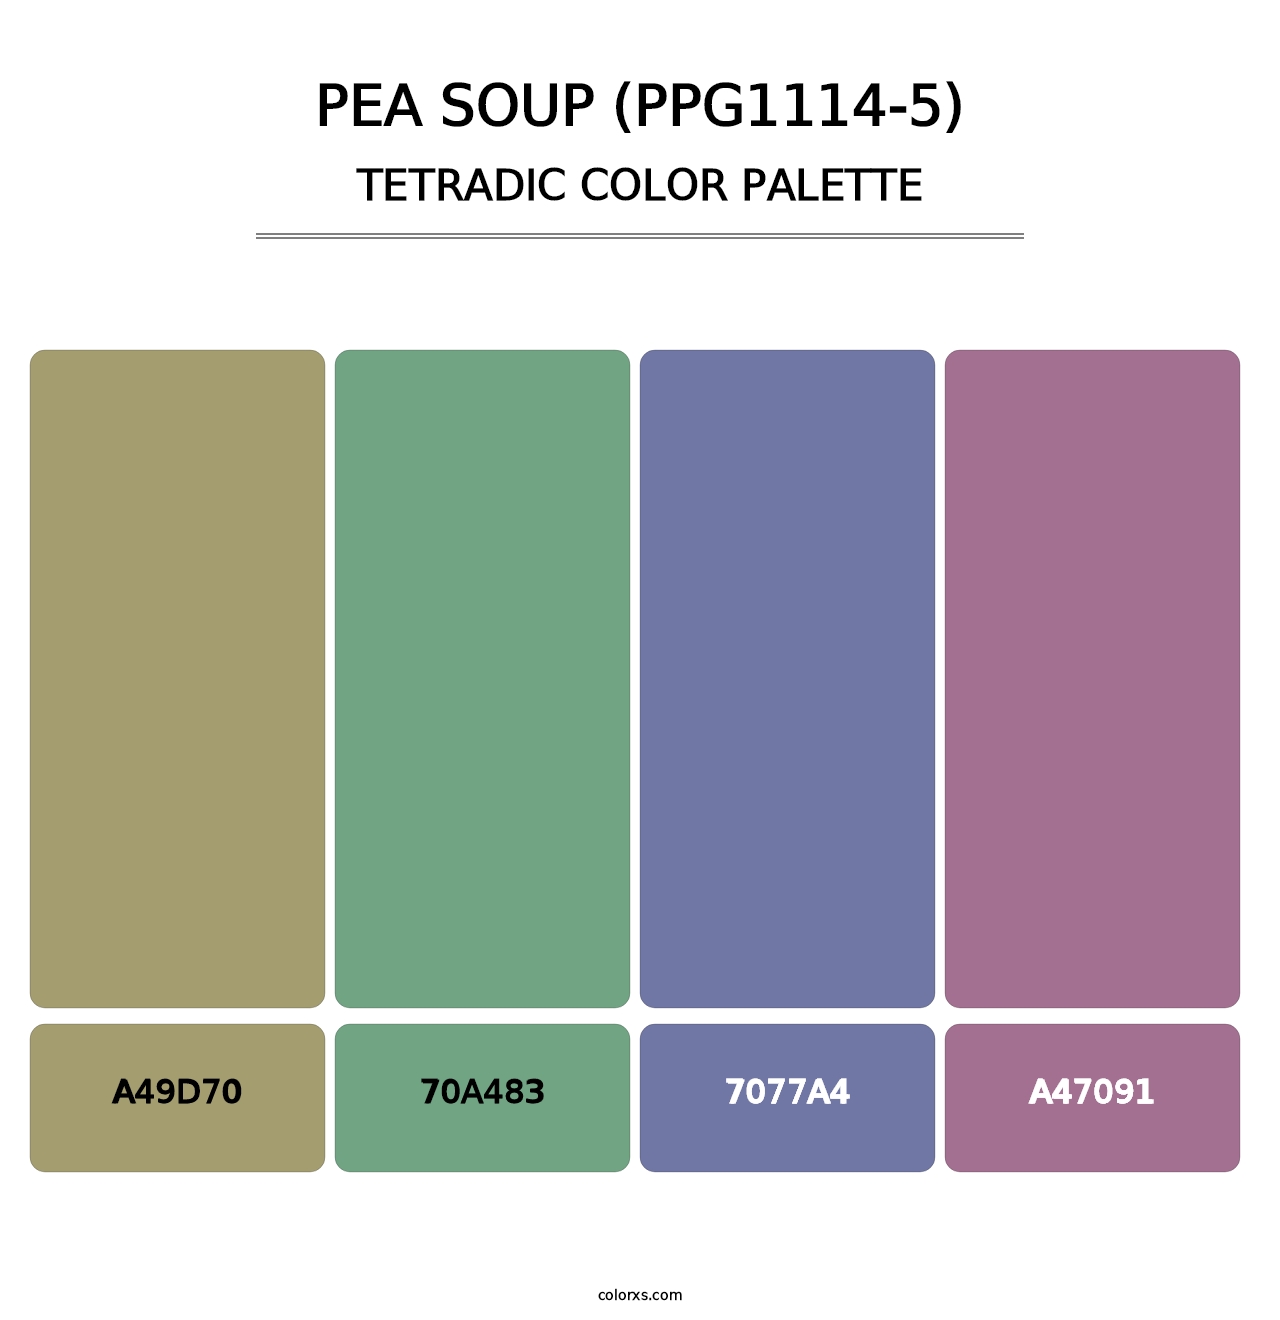 Pea Soup (PPG1114-5) - Tetradic Color Palette